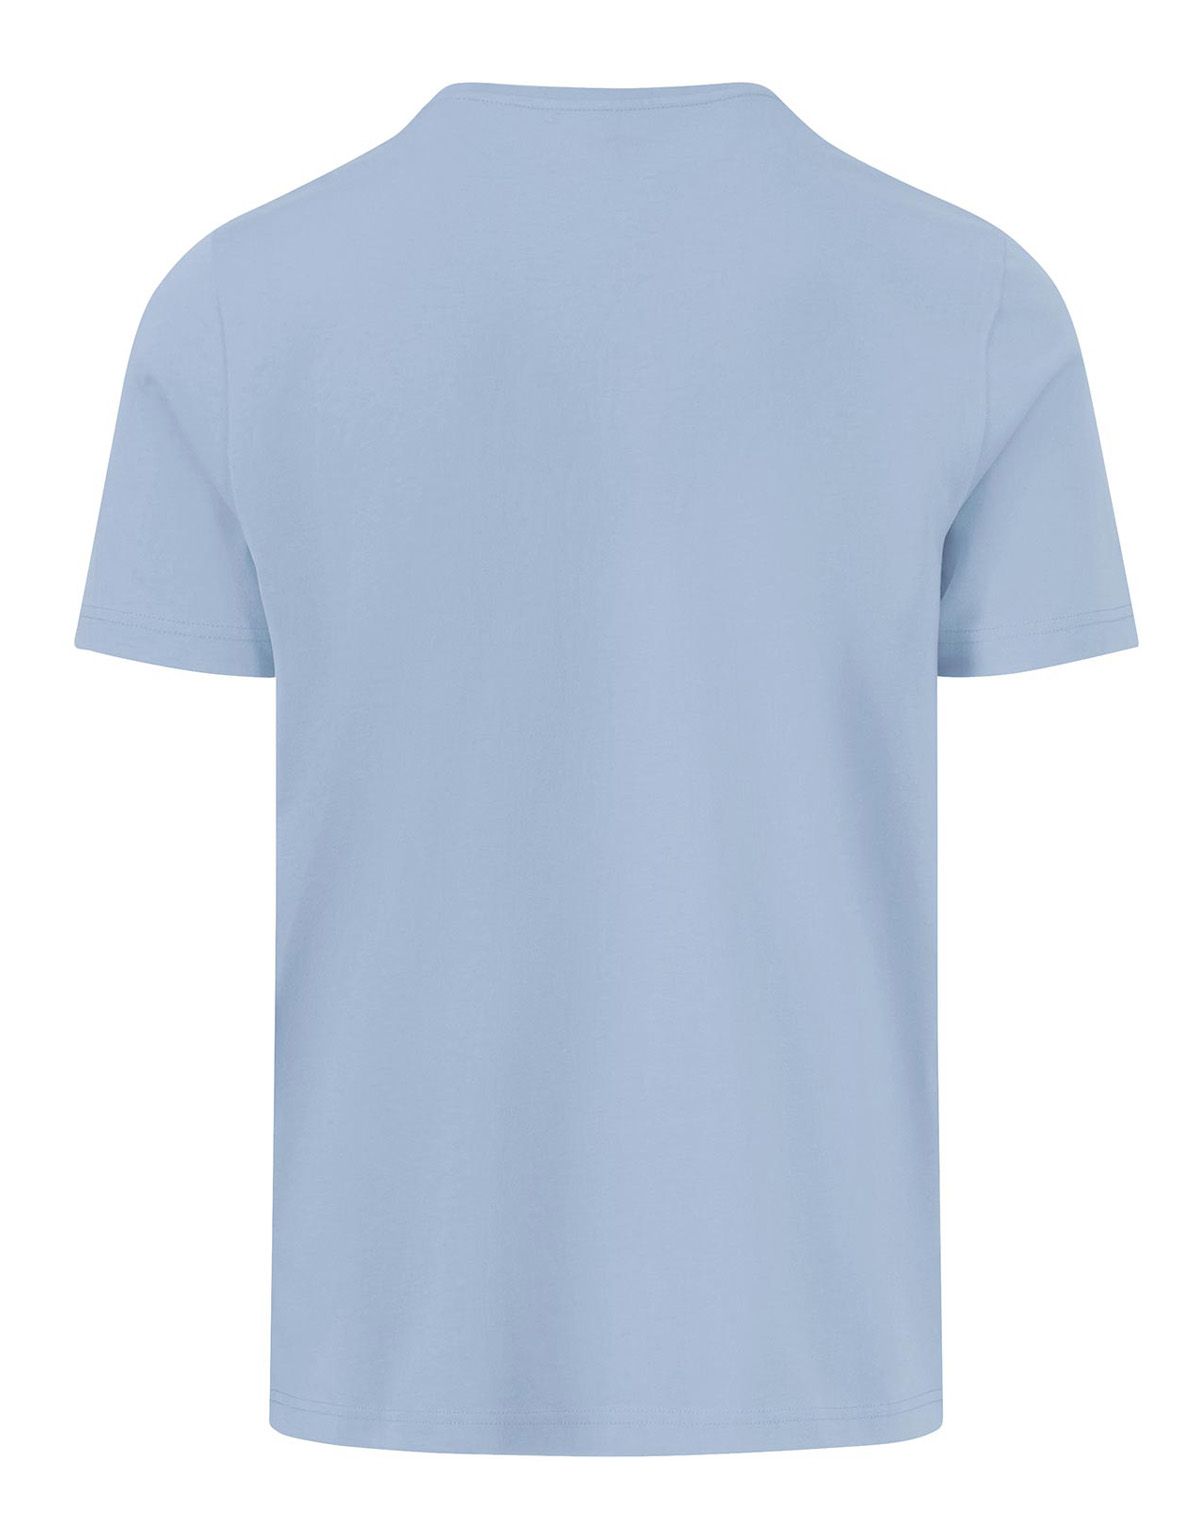 Футболка мужская голубая Fynch-Hatton однотонная | купить в интернет-магазине Olymp-Men